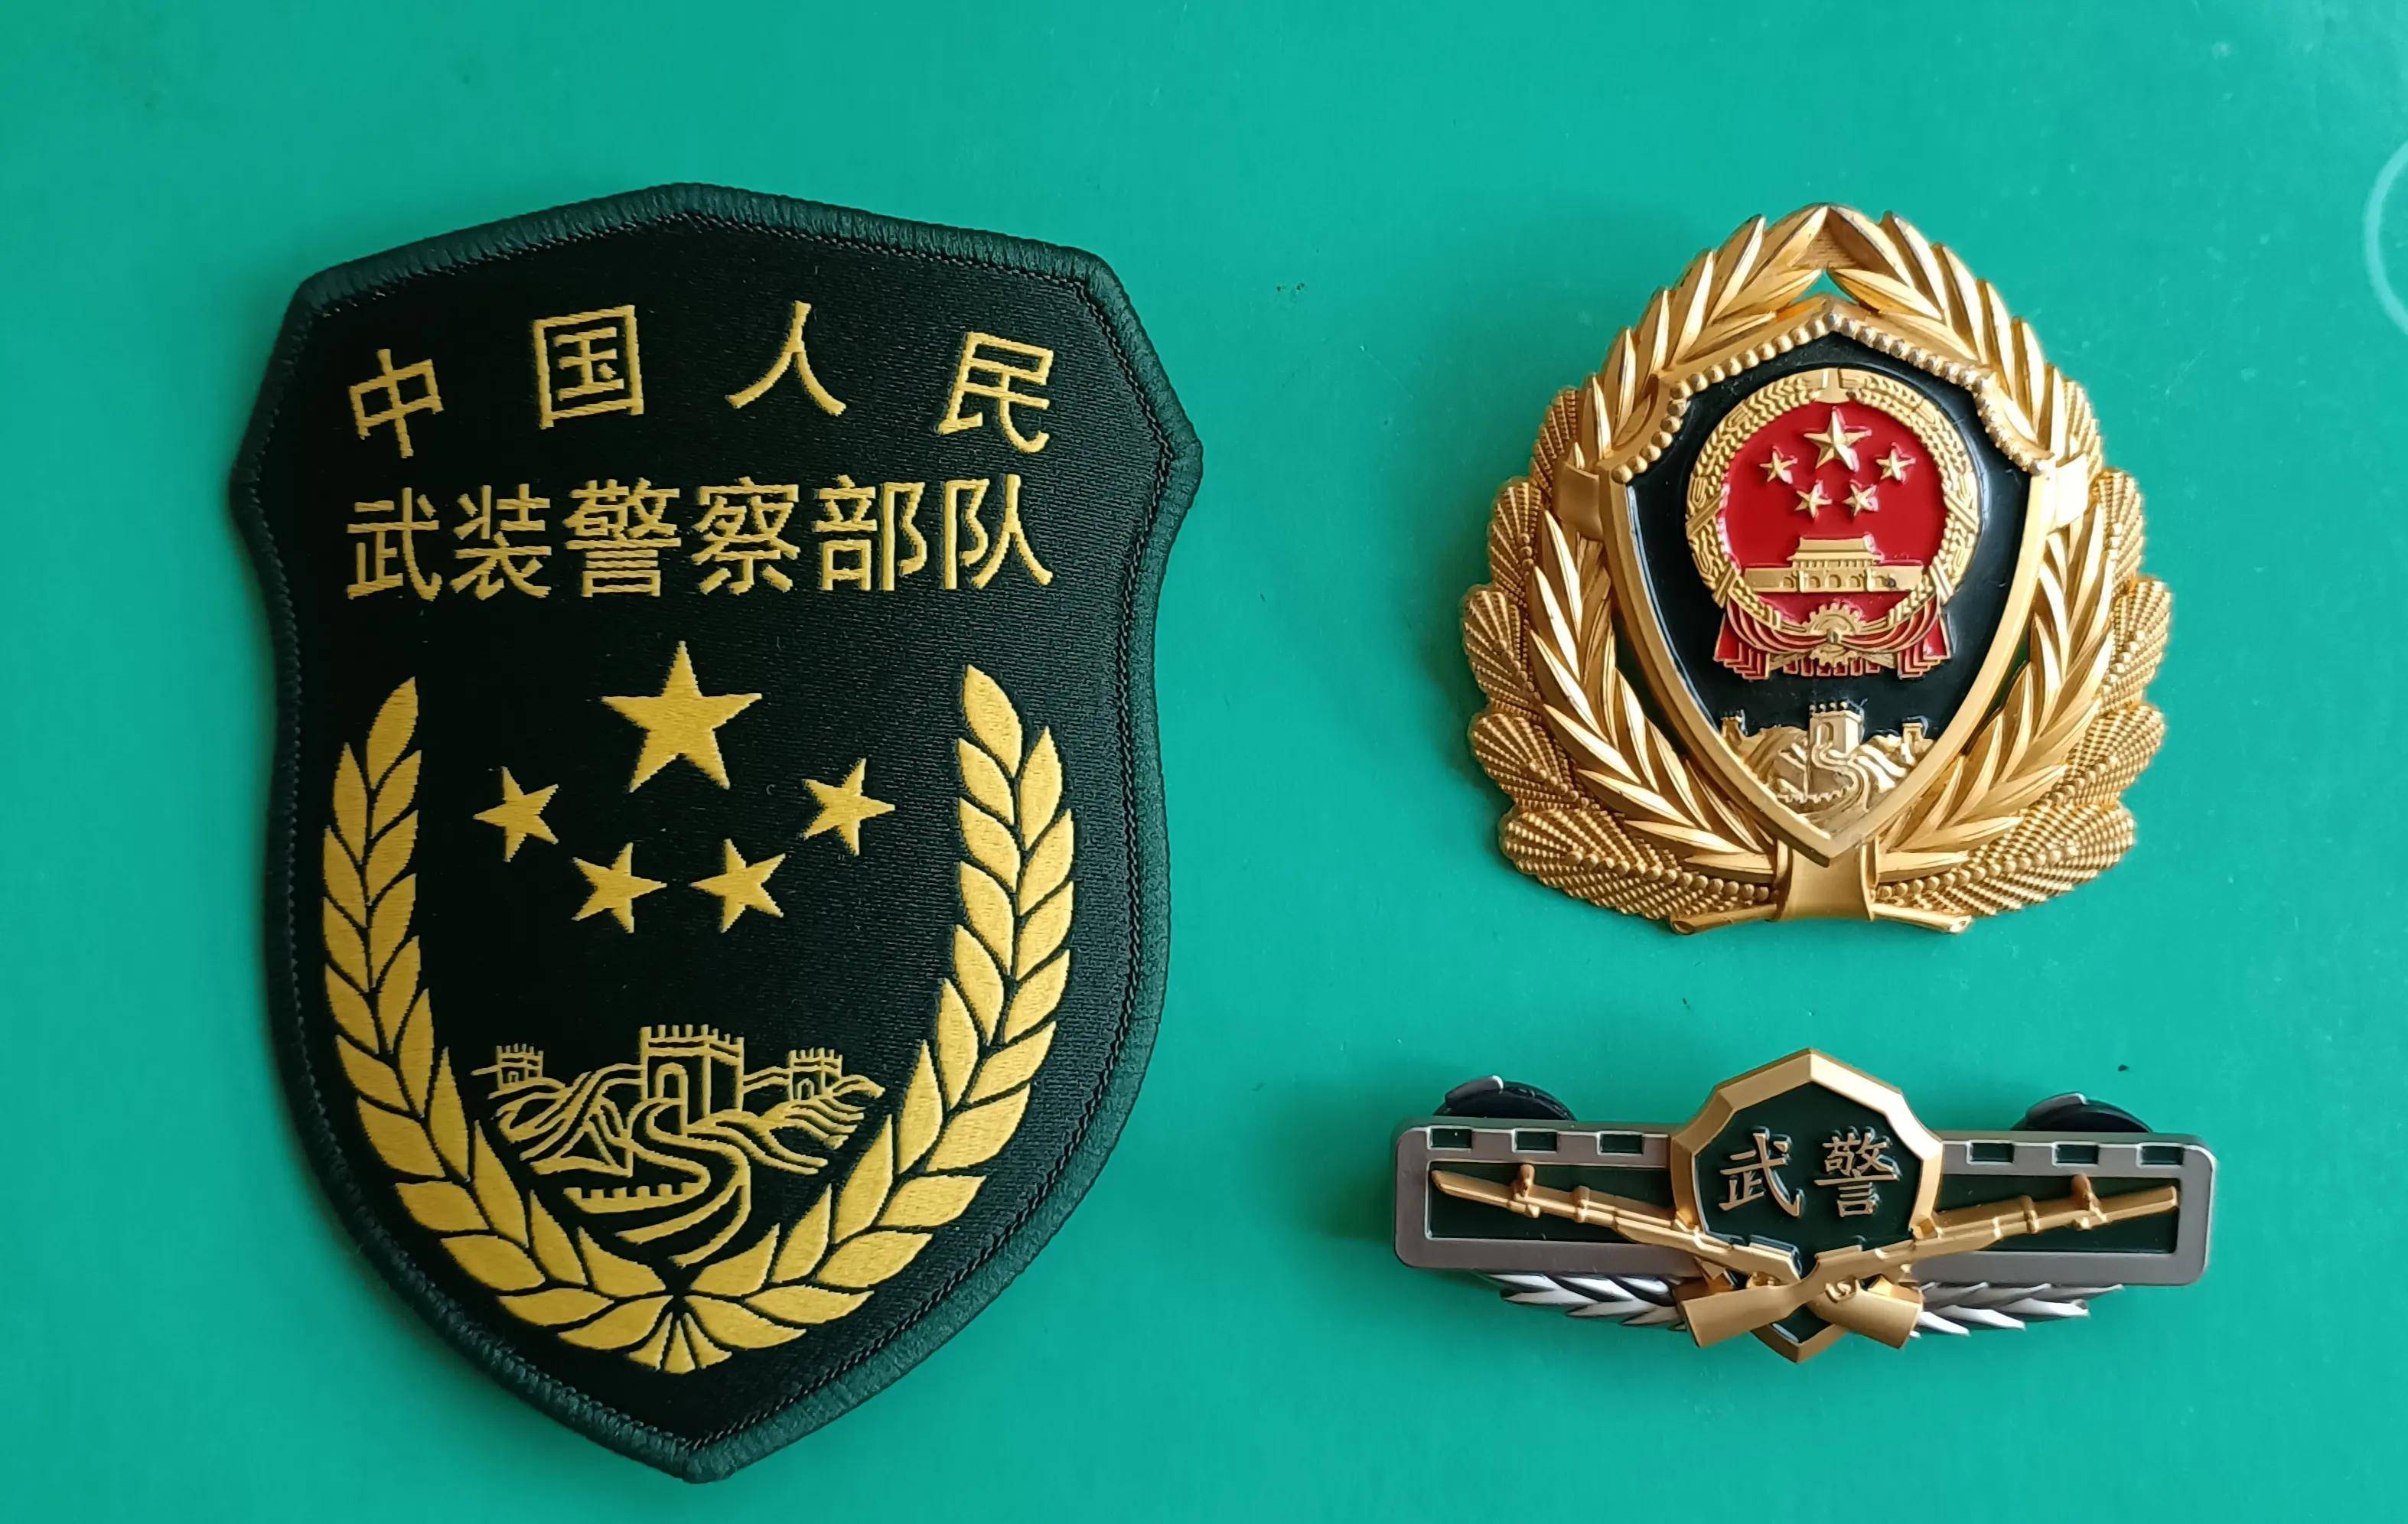 中國人民武裝警察部隊湖北省總隊